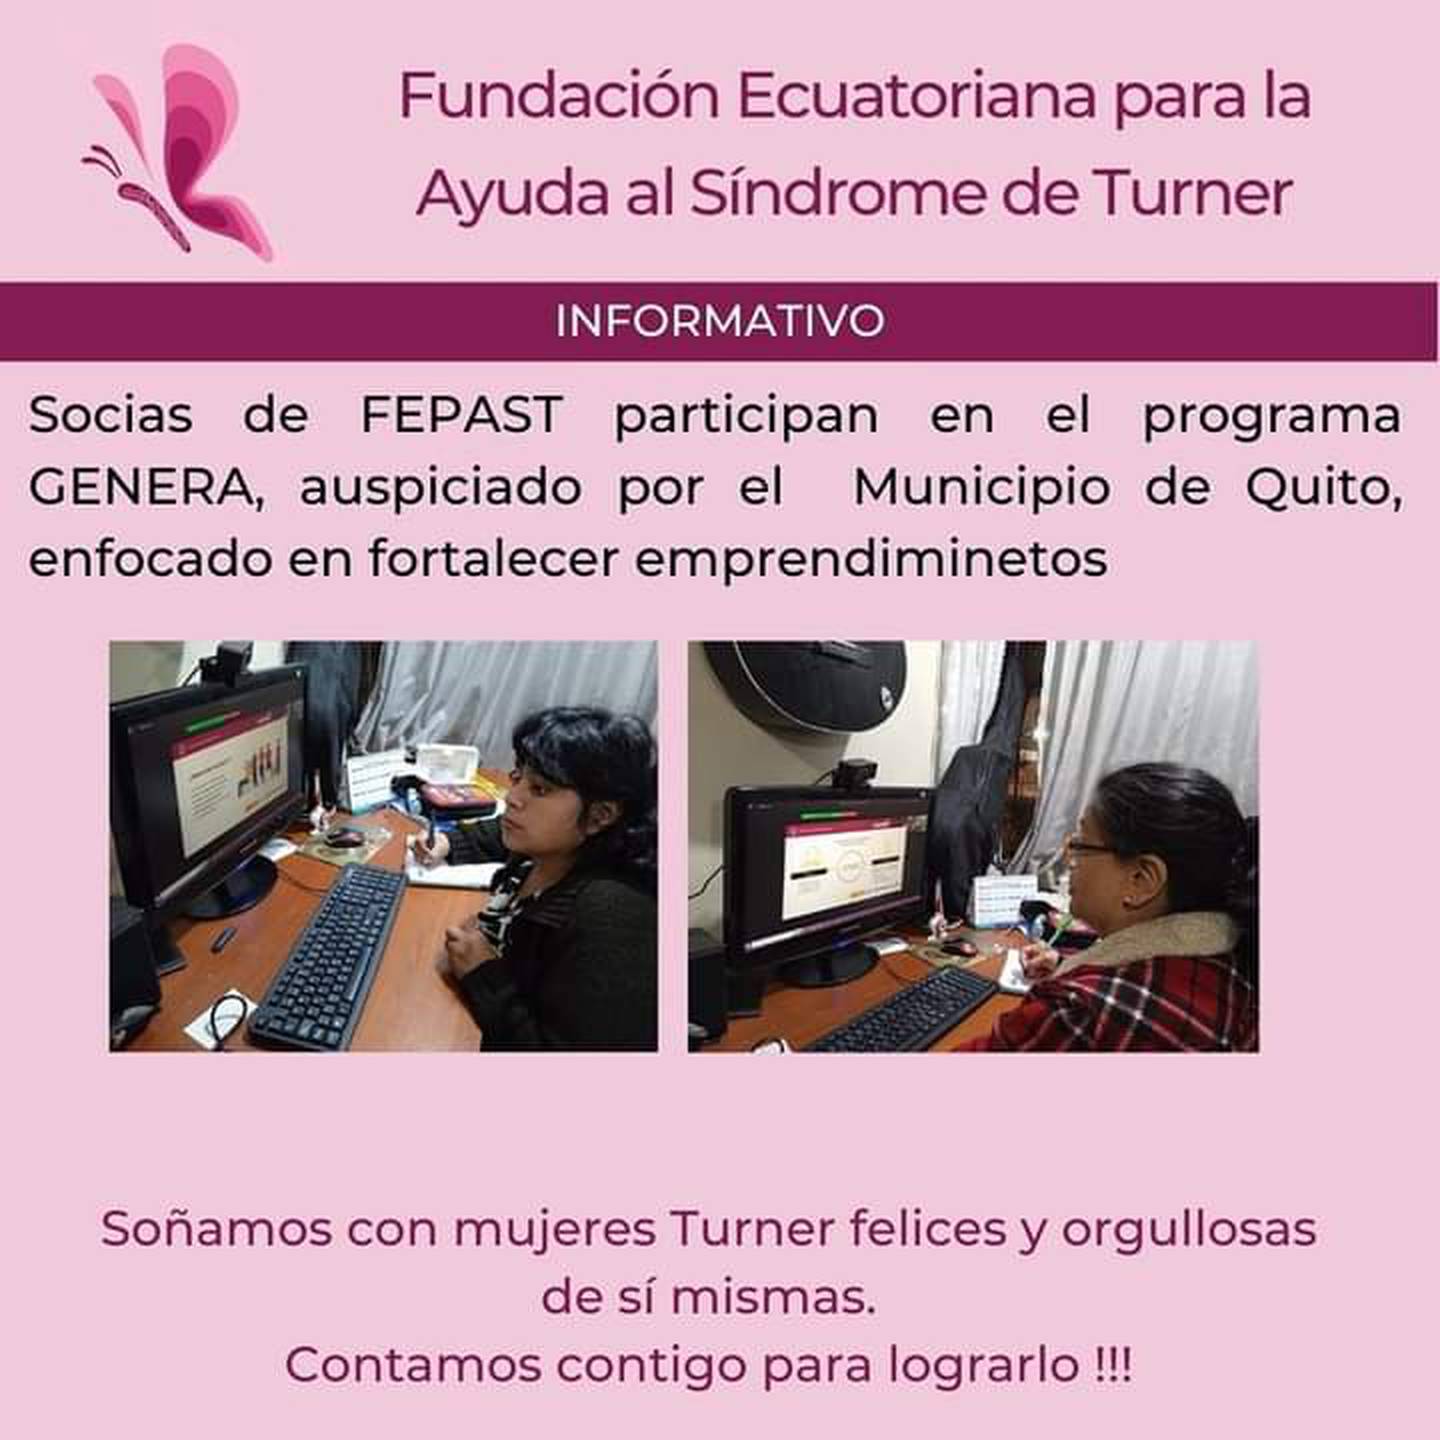 Fundación Ecuatoriana para el Síndrome de Turner